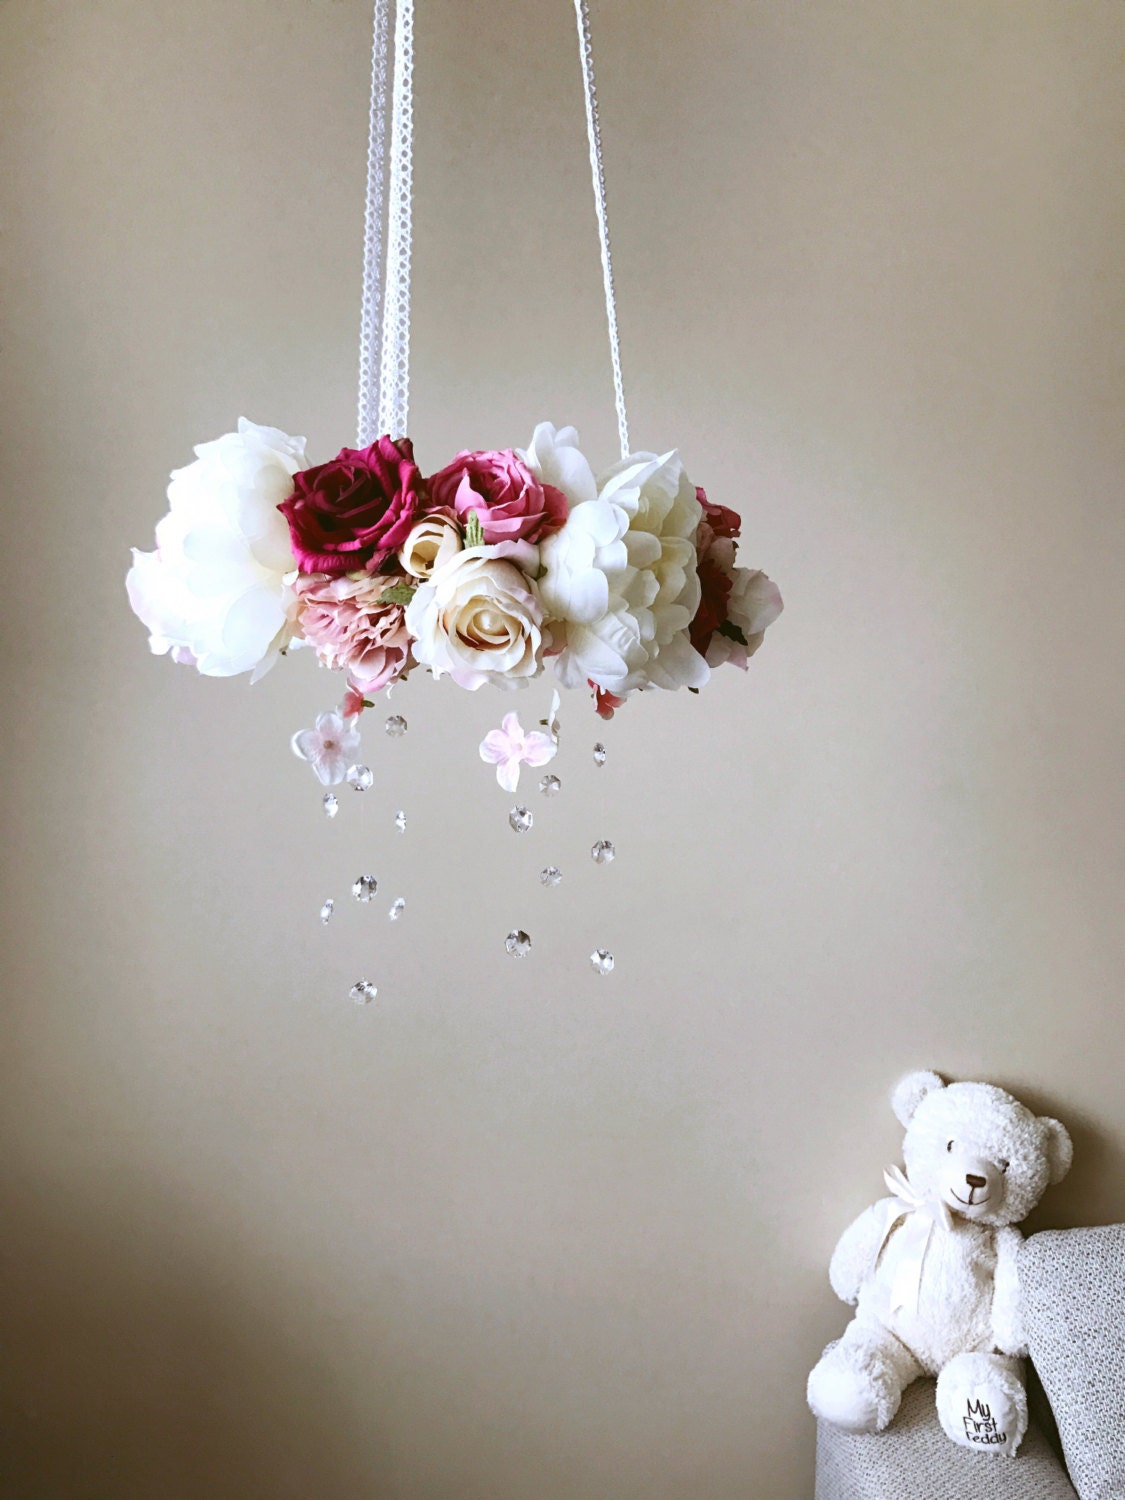 Baby mobile 14.5", Flower mobile, Genuine Swarovski crystals / Crib mobile, Vintage inspired, Wedding chandelier, vintage rose, Baby mobile